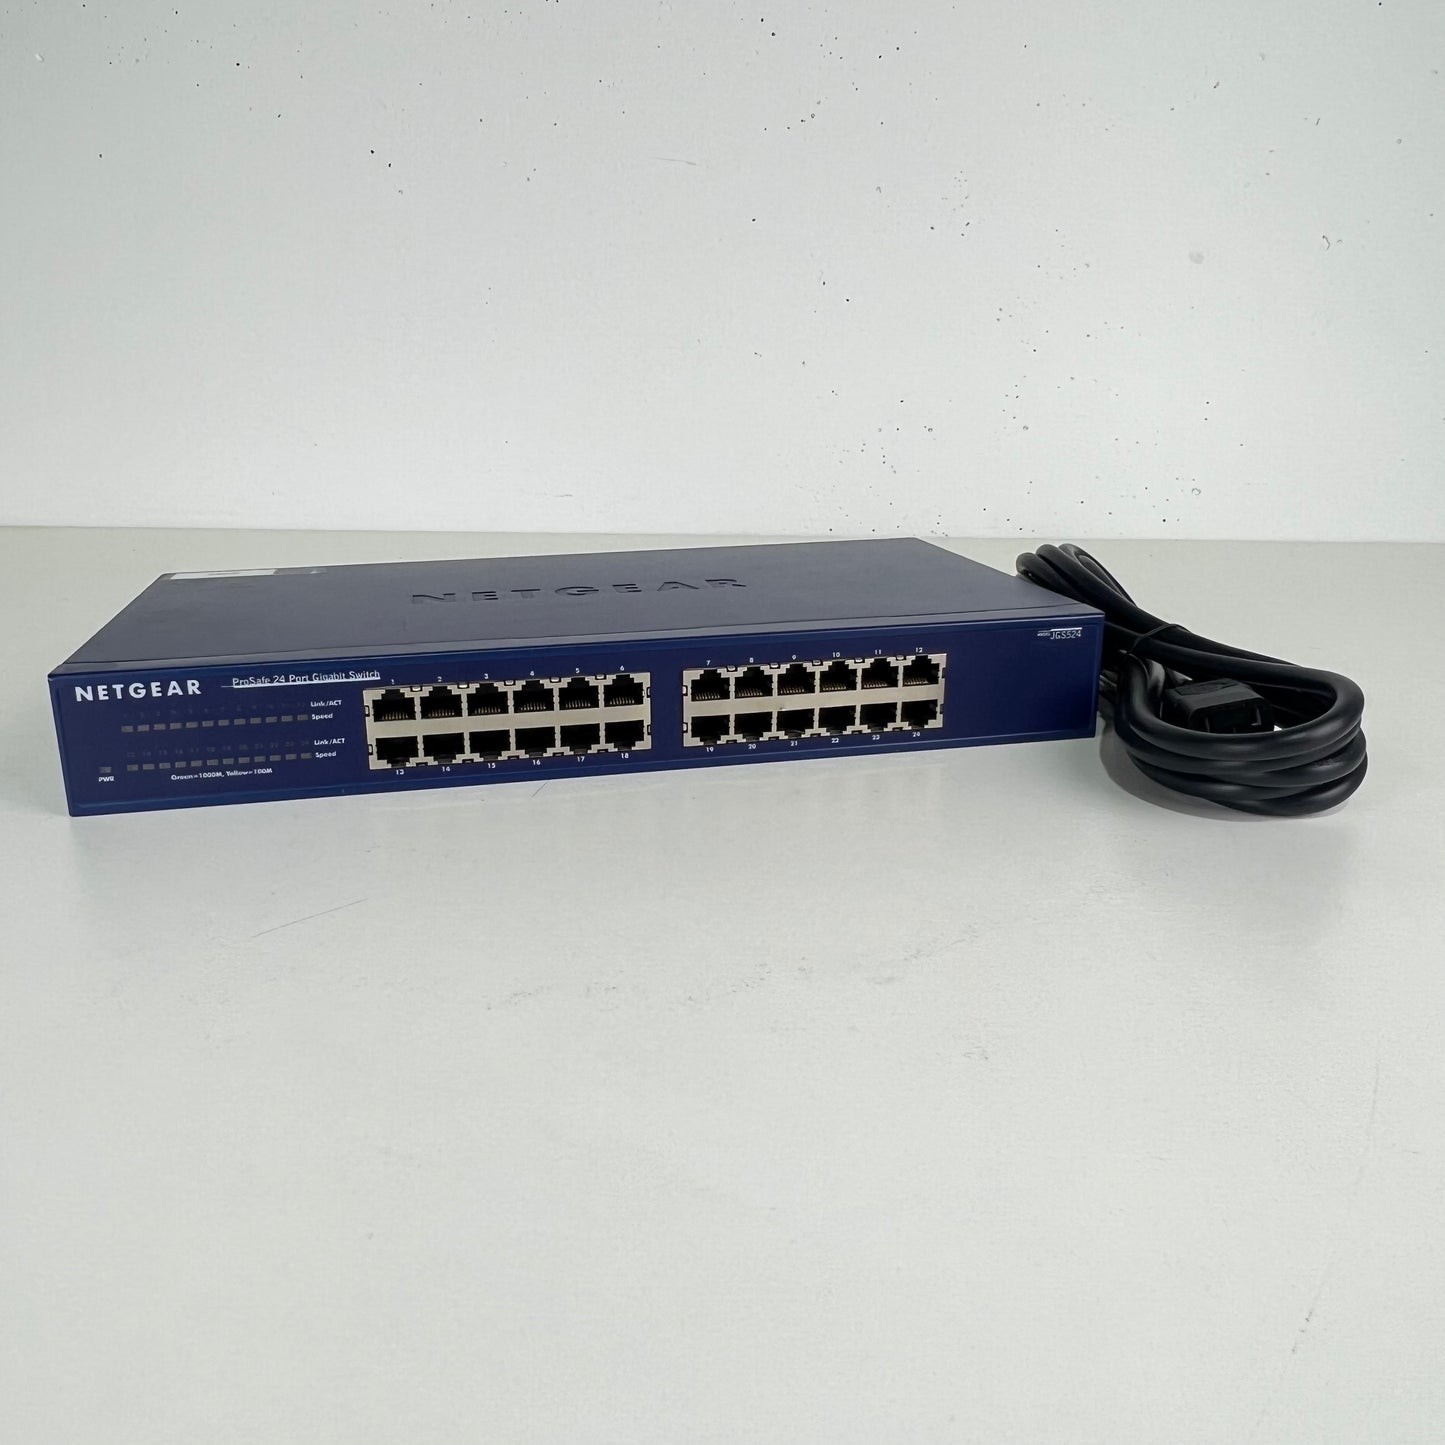 Netgear Prosafe 24 port Gigabit Switch JGS524 v2